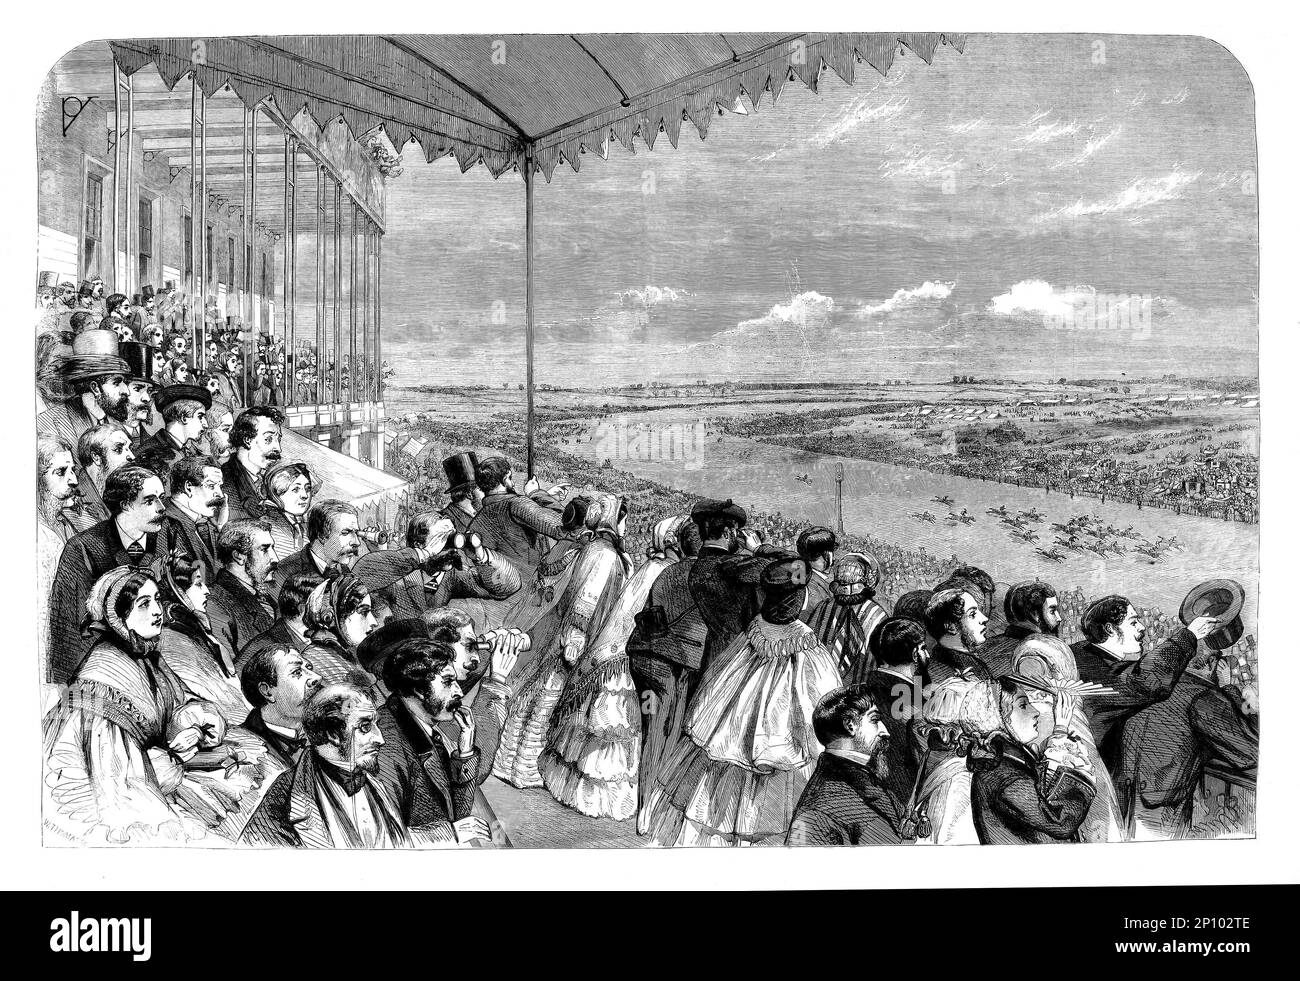 La course hippique plate Epsom Derby and Oaks 1860, vue depuis la tribune de l'hippodrome d'Epsom Downs à Surrey, en Angleterre, dessinée par M. S. Morgan Banque D'Images